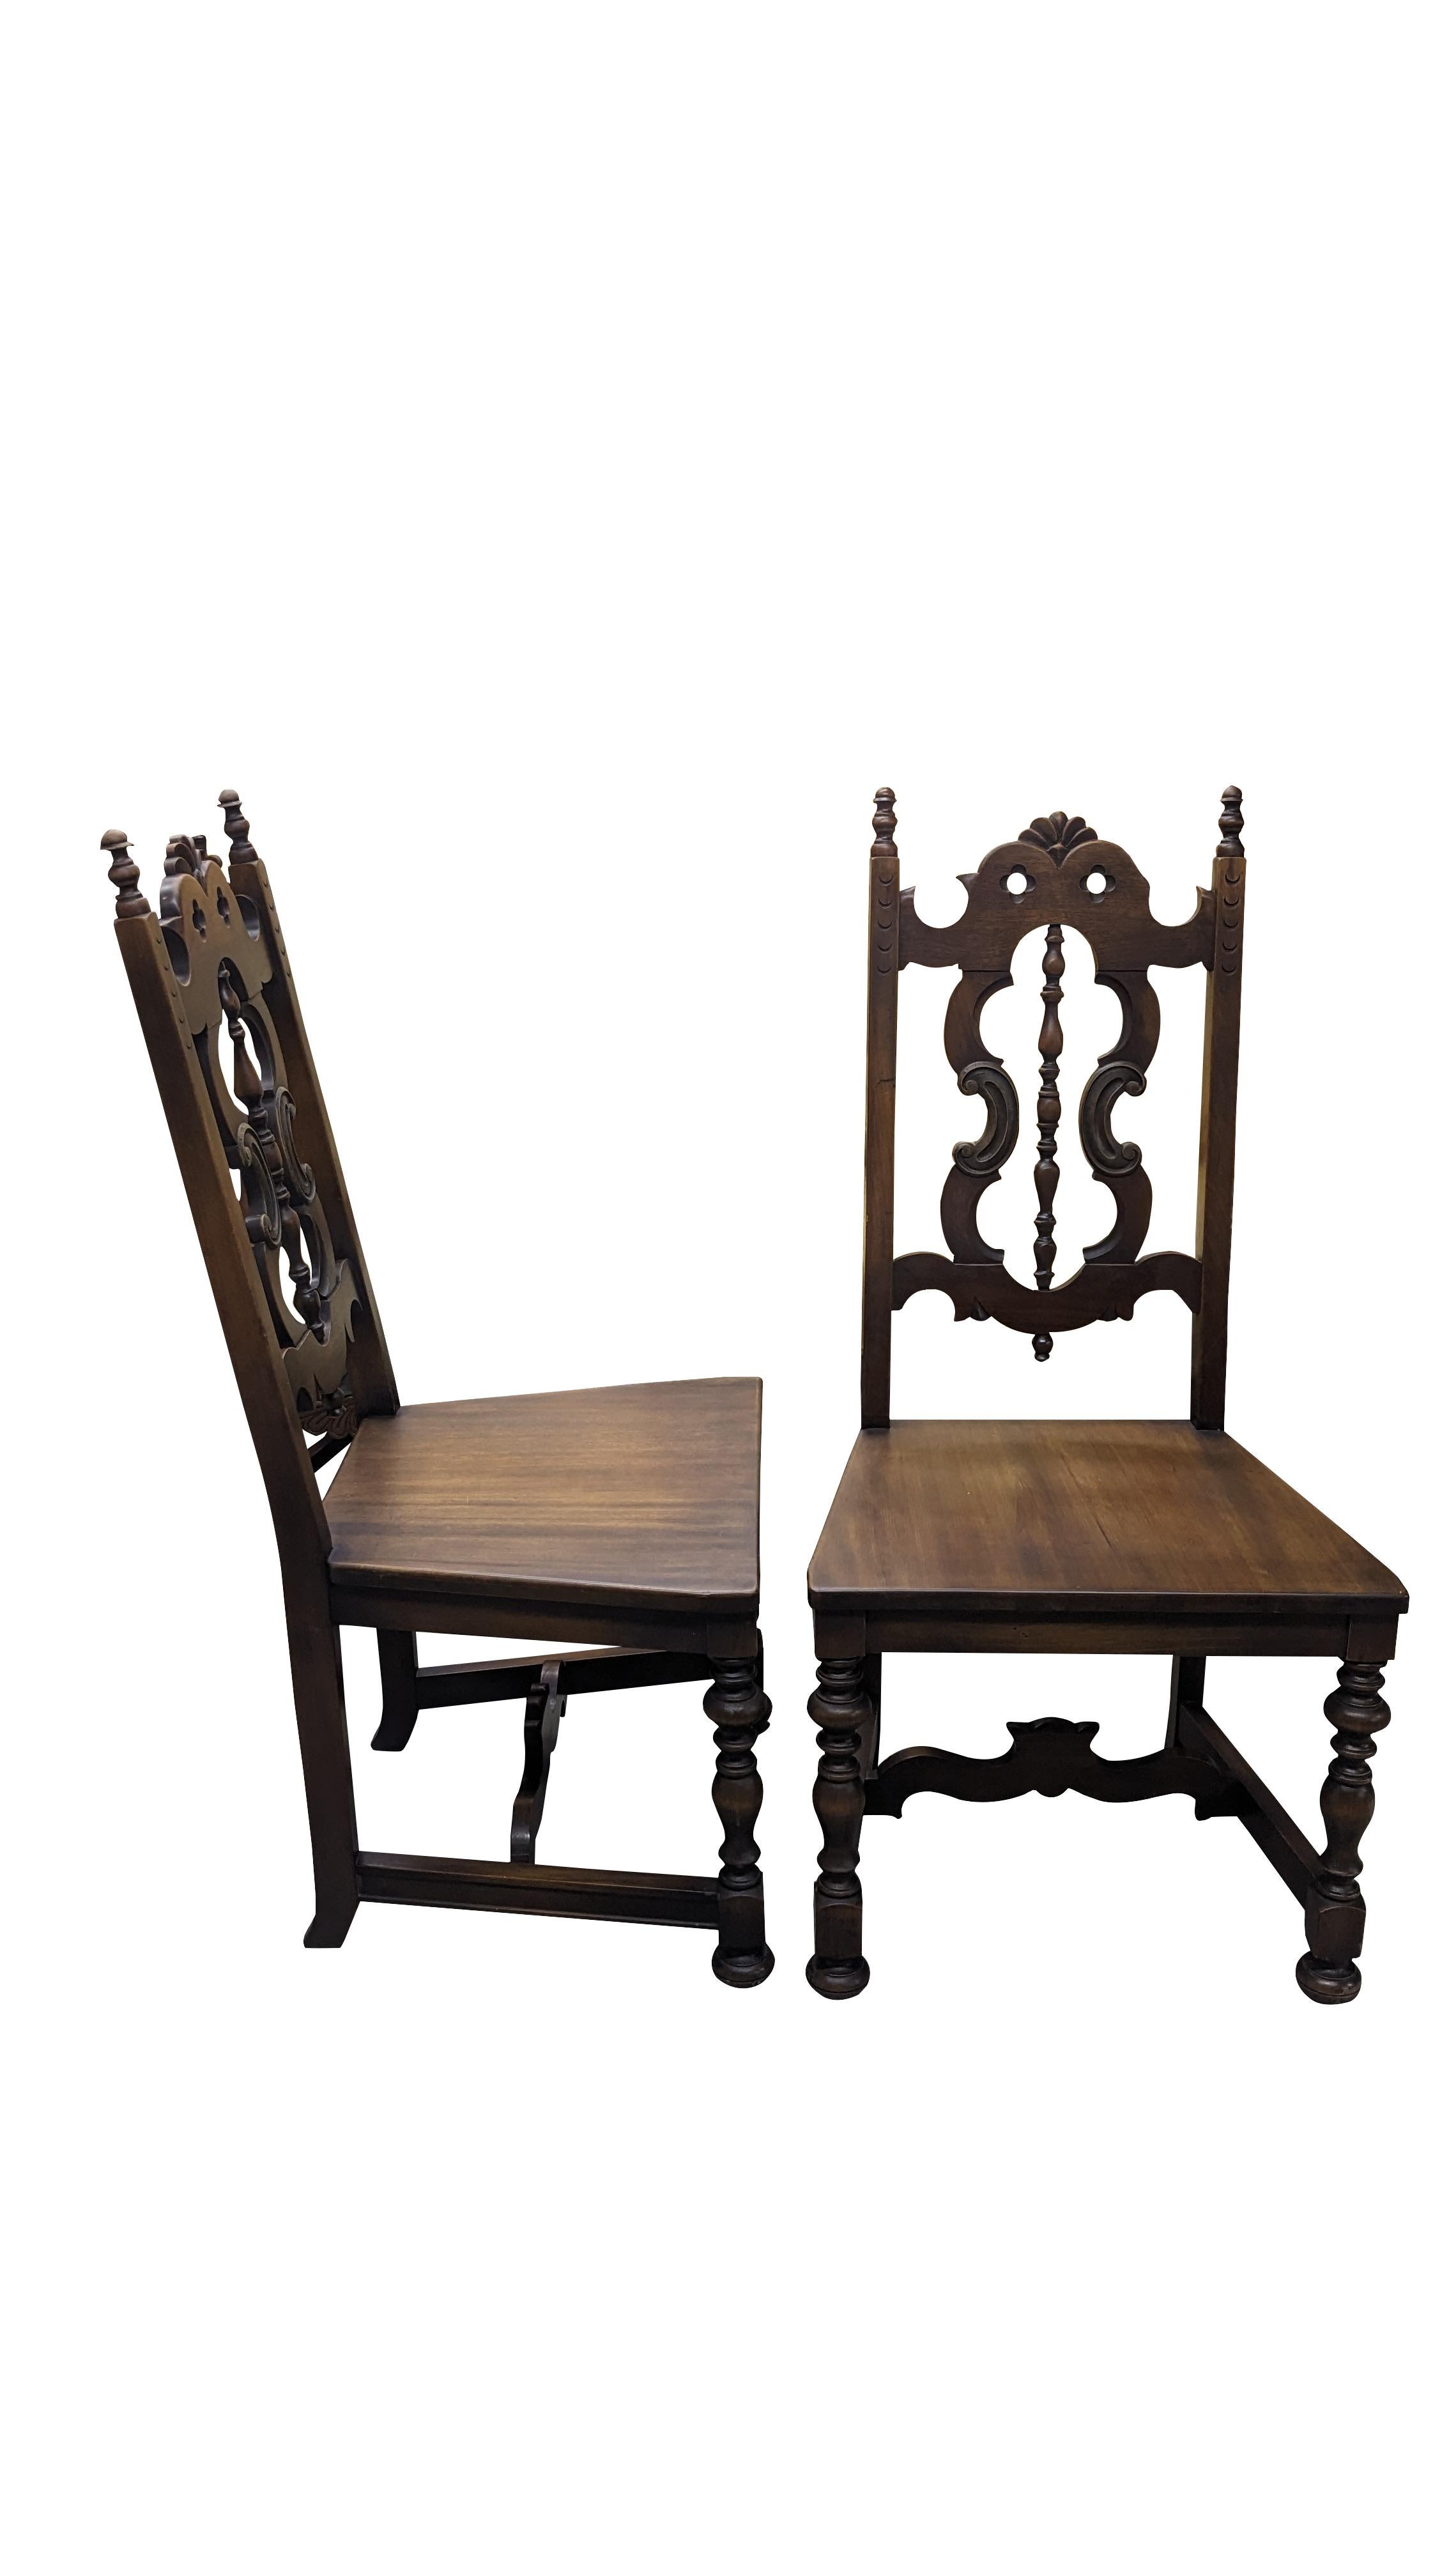 Ensemble de 4 chaises de salle à manger antiques Life Time Furniture Jacobean / Spanish Revival.  Fabriquée en noyer, elle présente un style jacobéen avec des supports tournés, un dos percé, des accents serpentins et des épis de faîtage.

À la fin